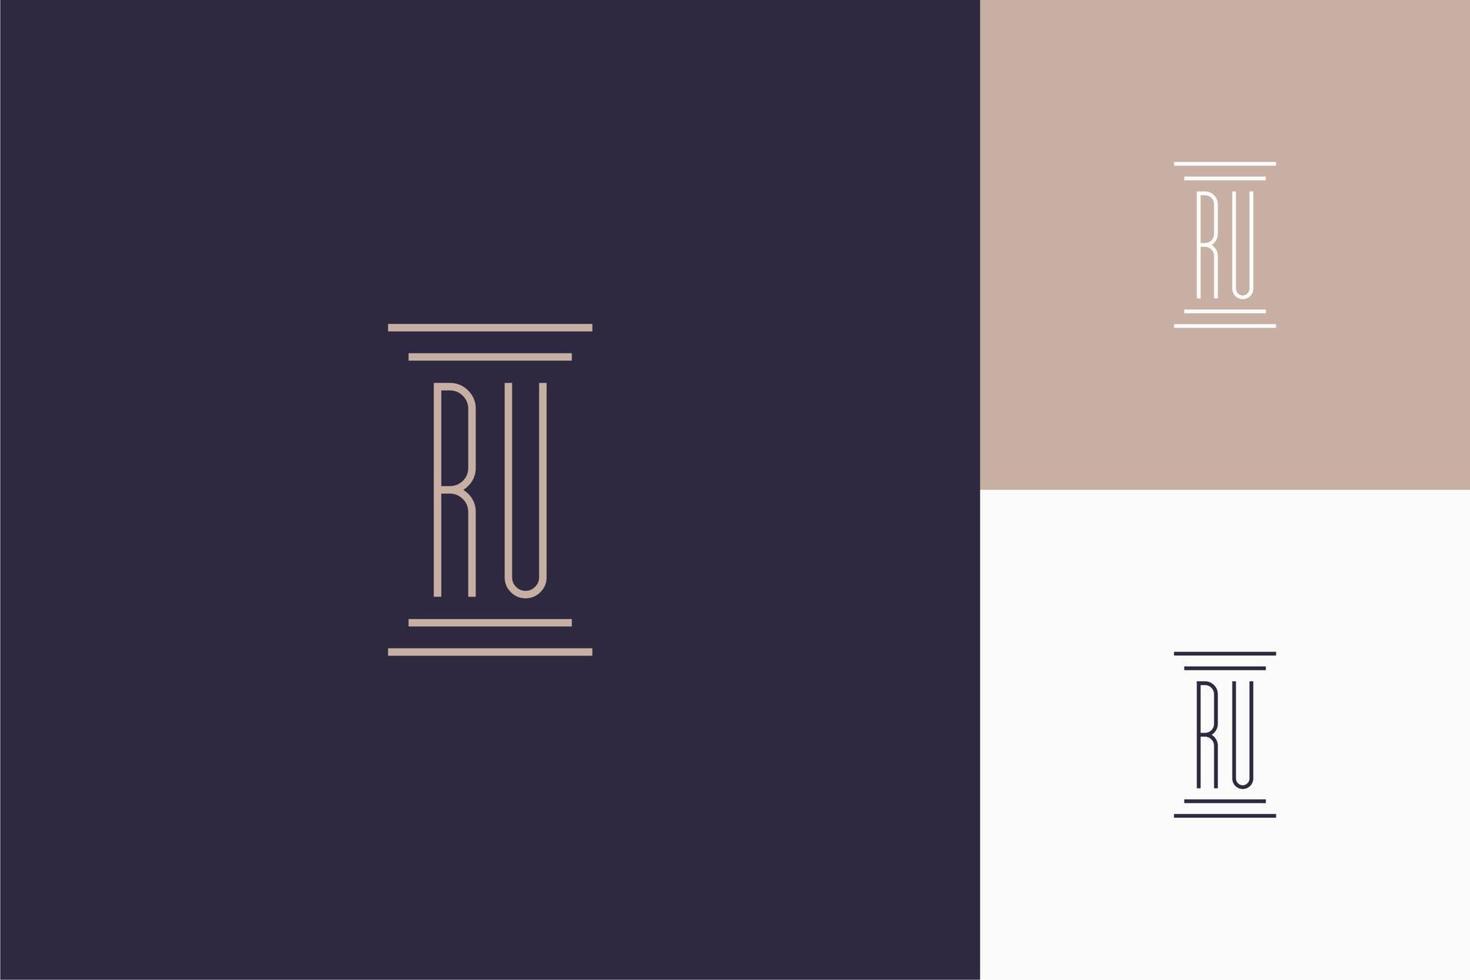 conception des initiales du monogramme ru pour le logo du cabinet d'avocats vecteur